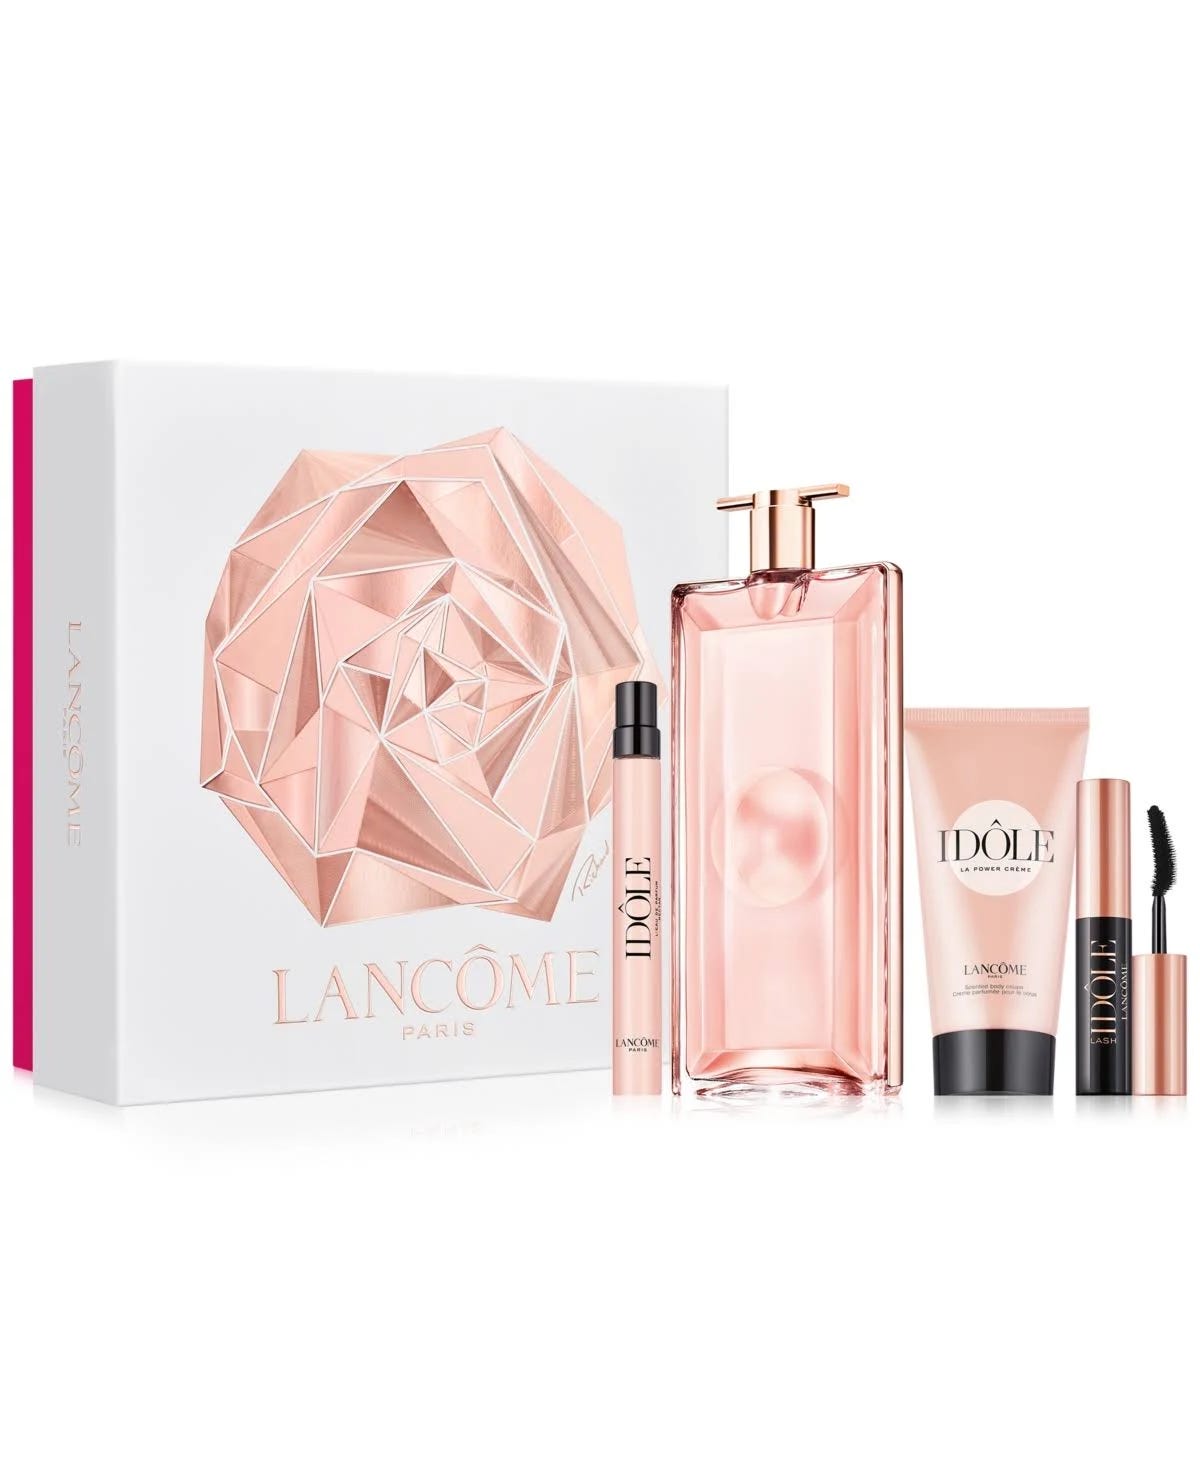 Lancome Idole Moments Gift Set - Luxury Perfume Collection | Image